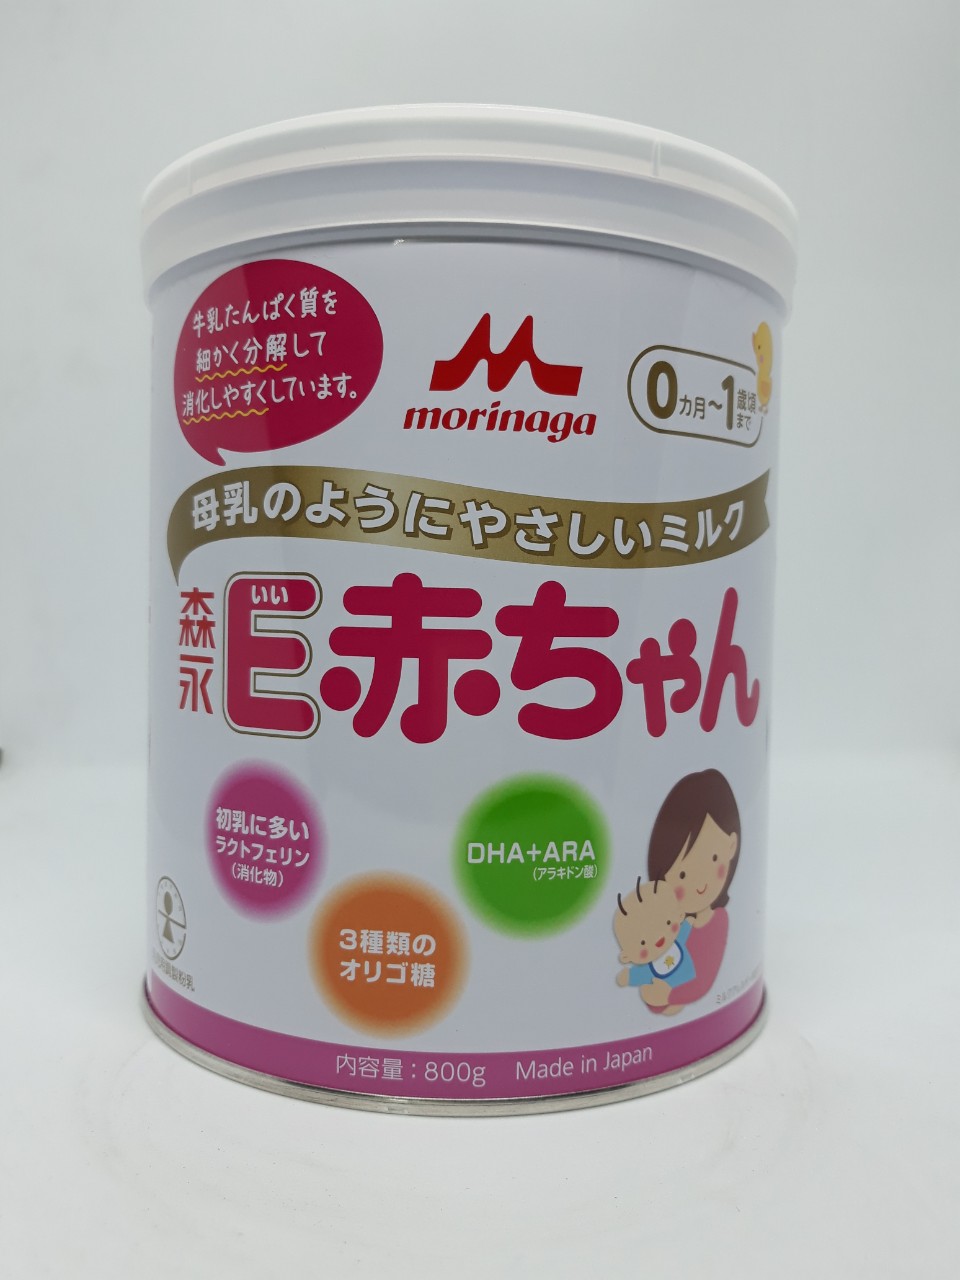 Sữa Morinaga Hagukumi số 1 320g